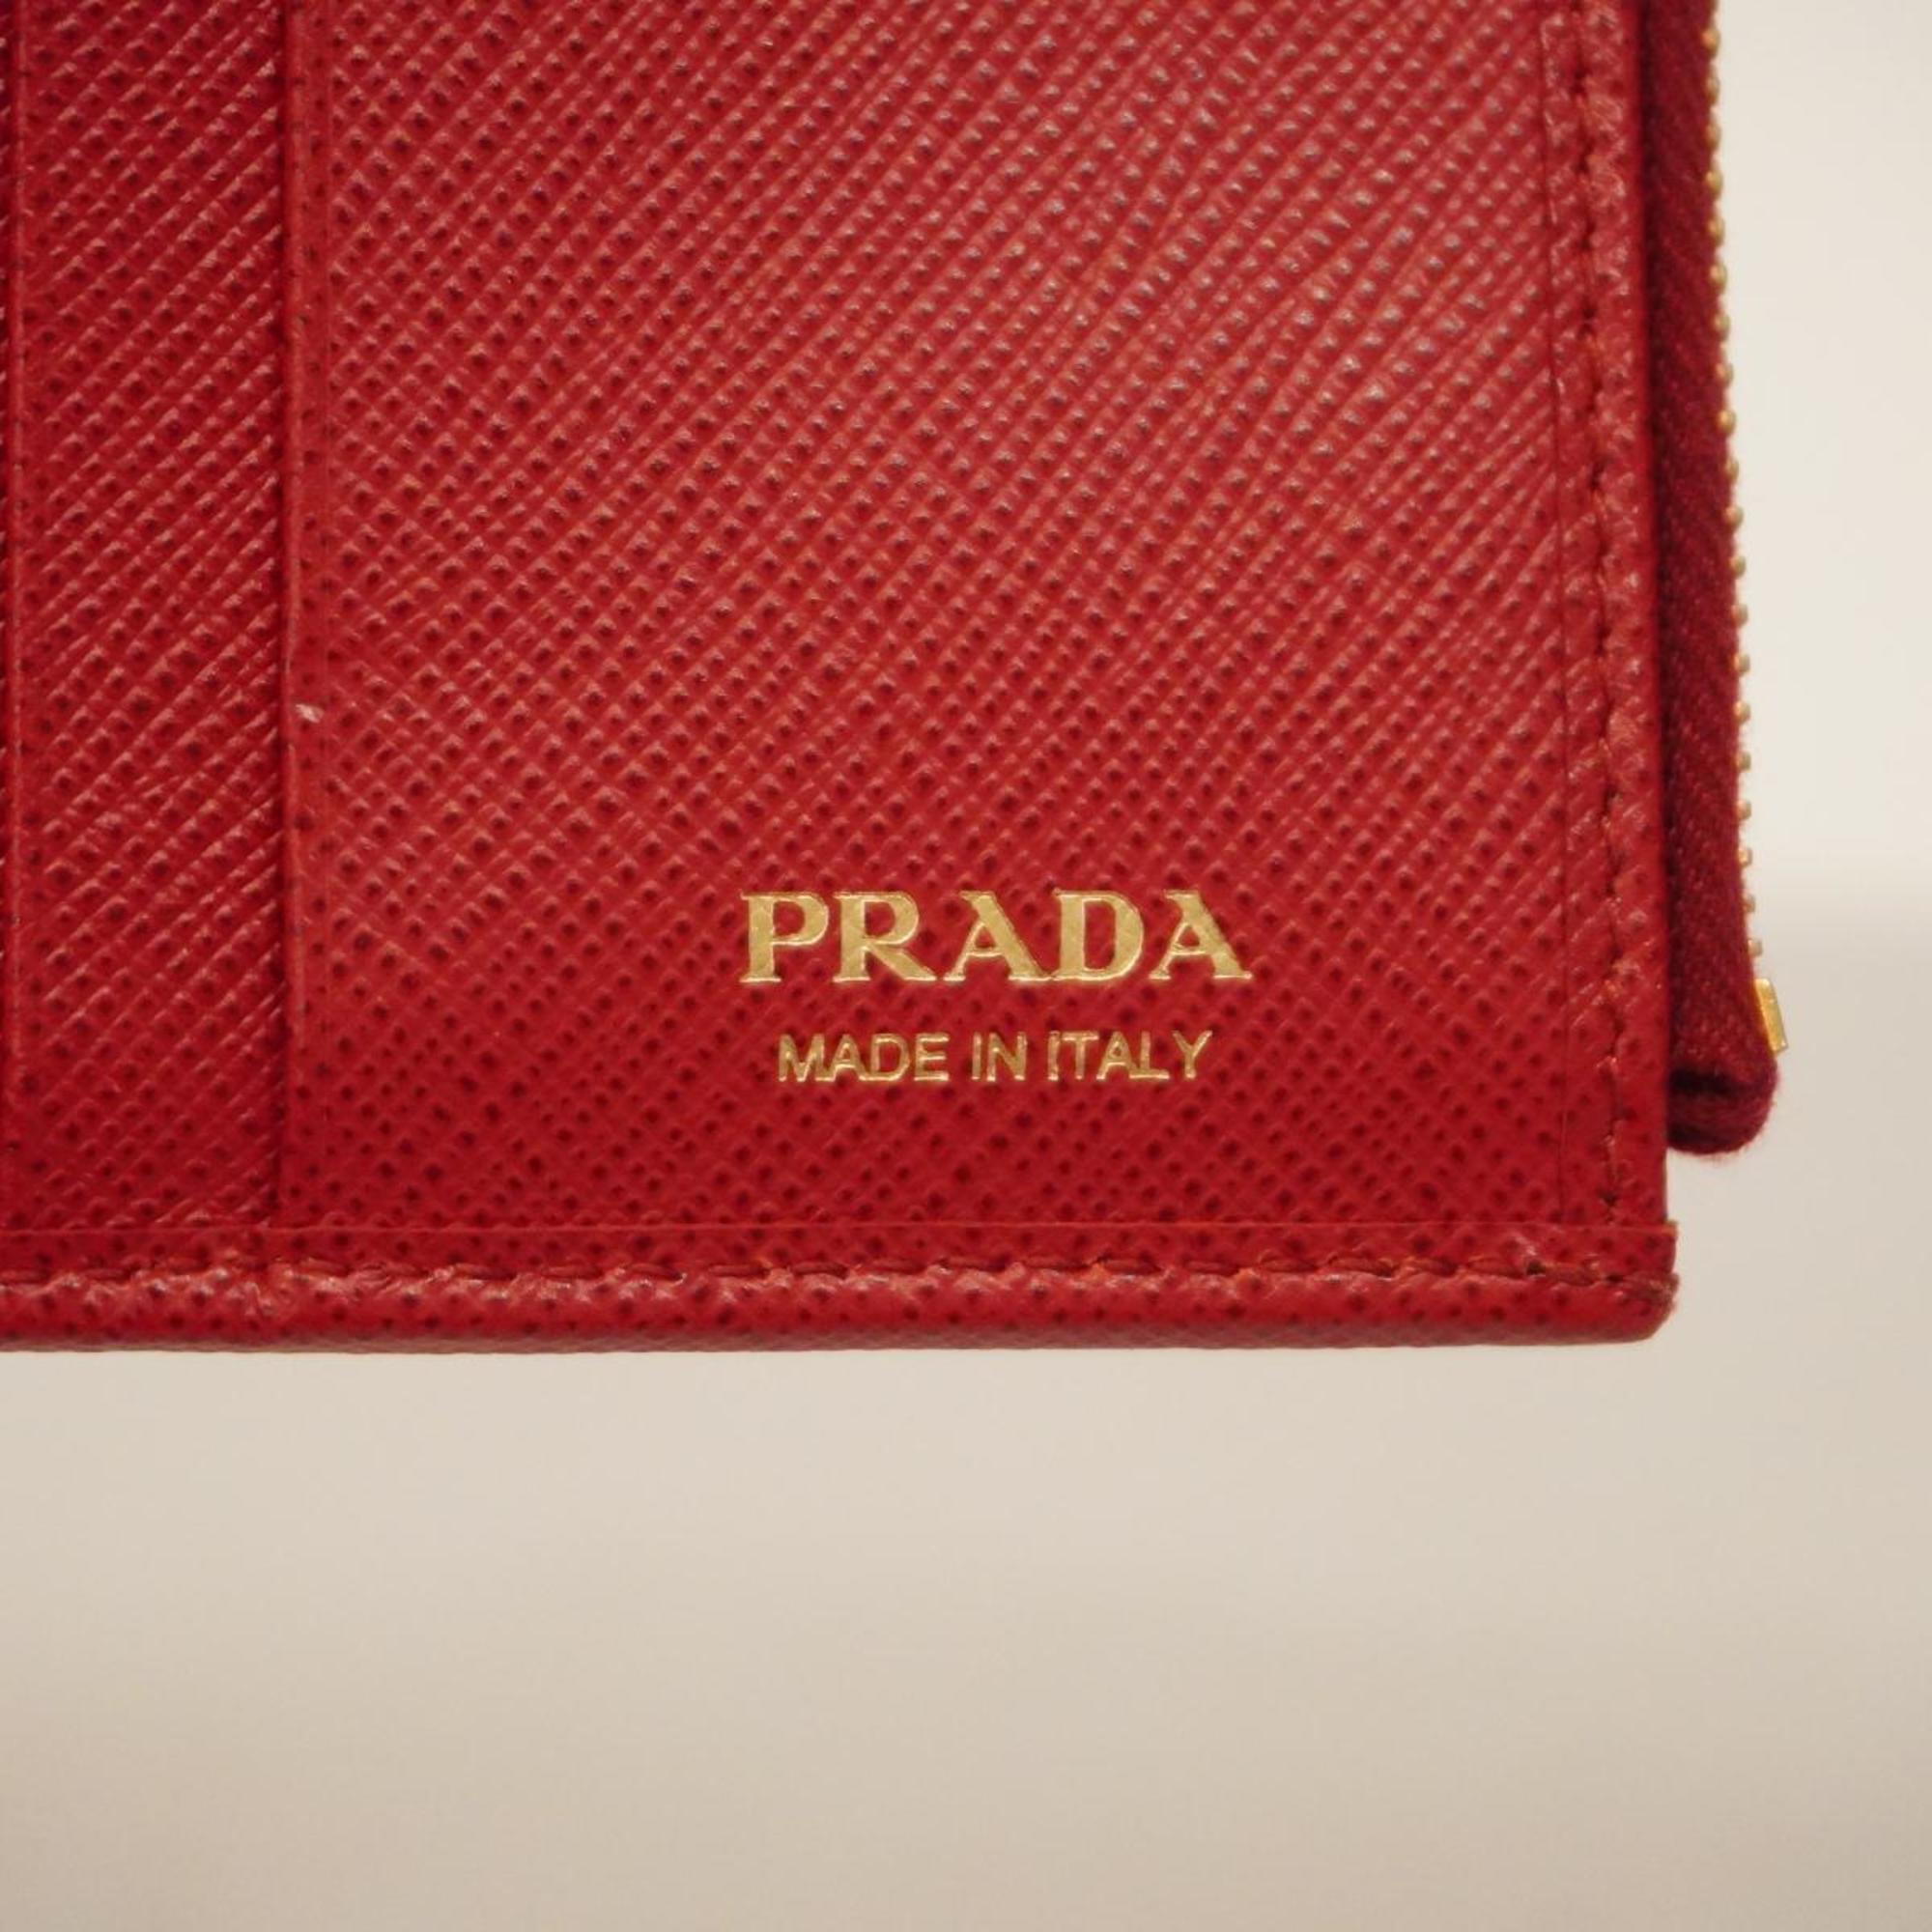 プラダ(Prada) プラダ 財布 サフィアーノ レザー レッド   レディース